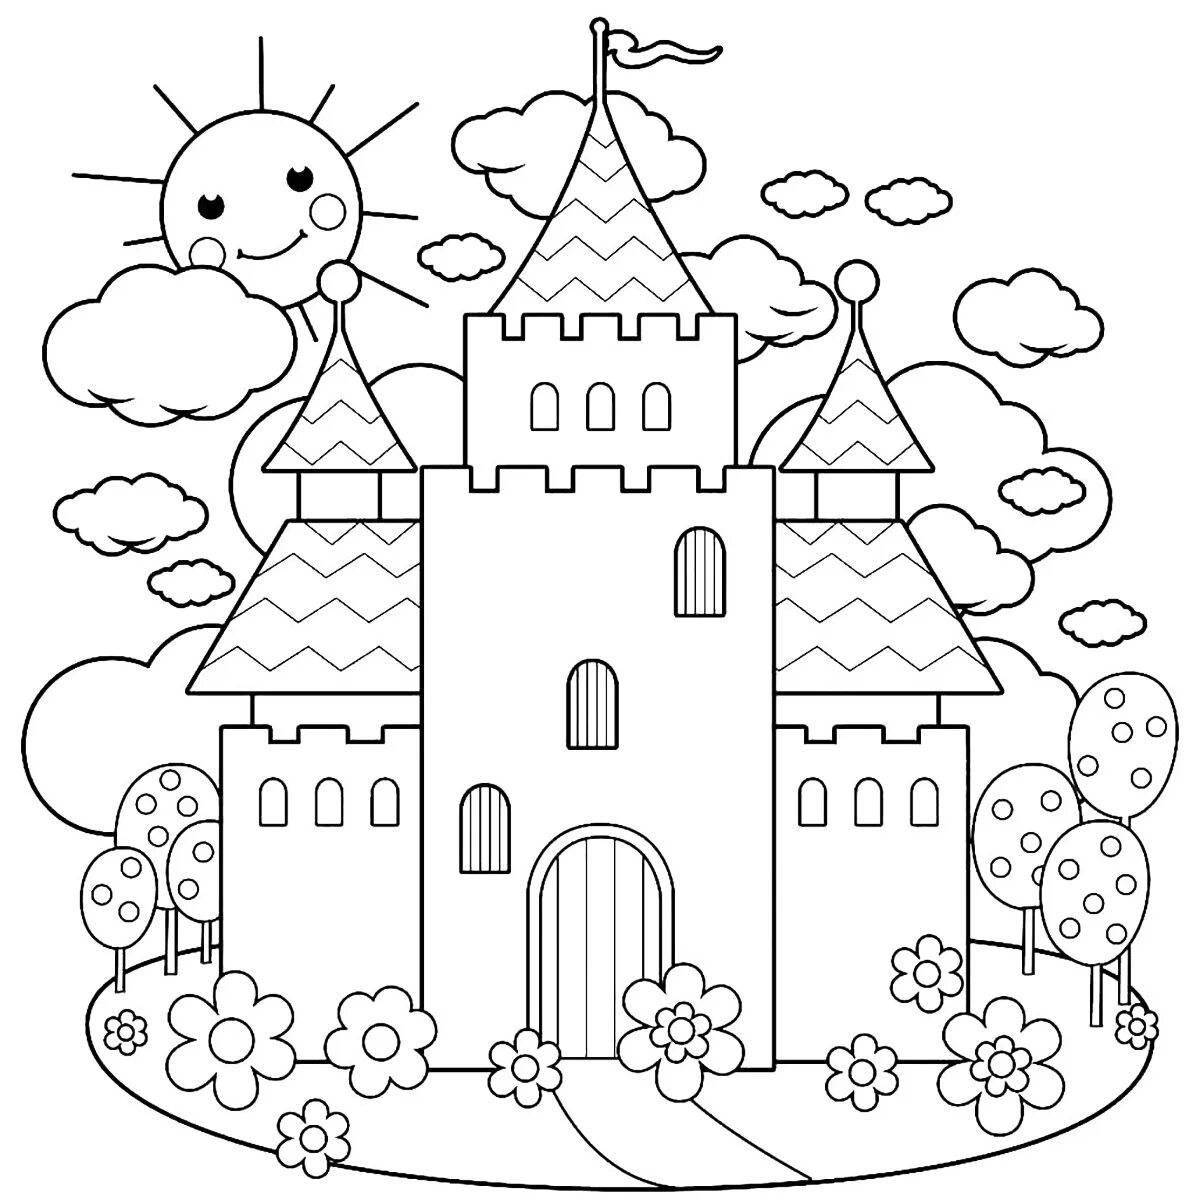 Exquisite fairy tale castle coloring book